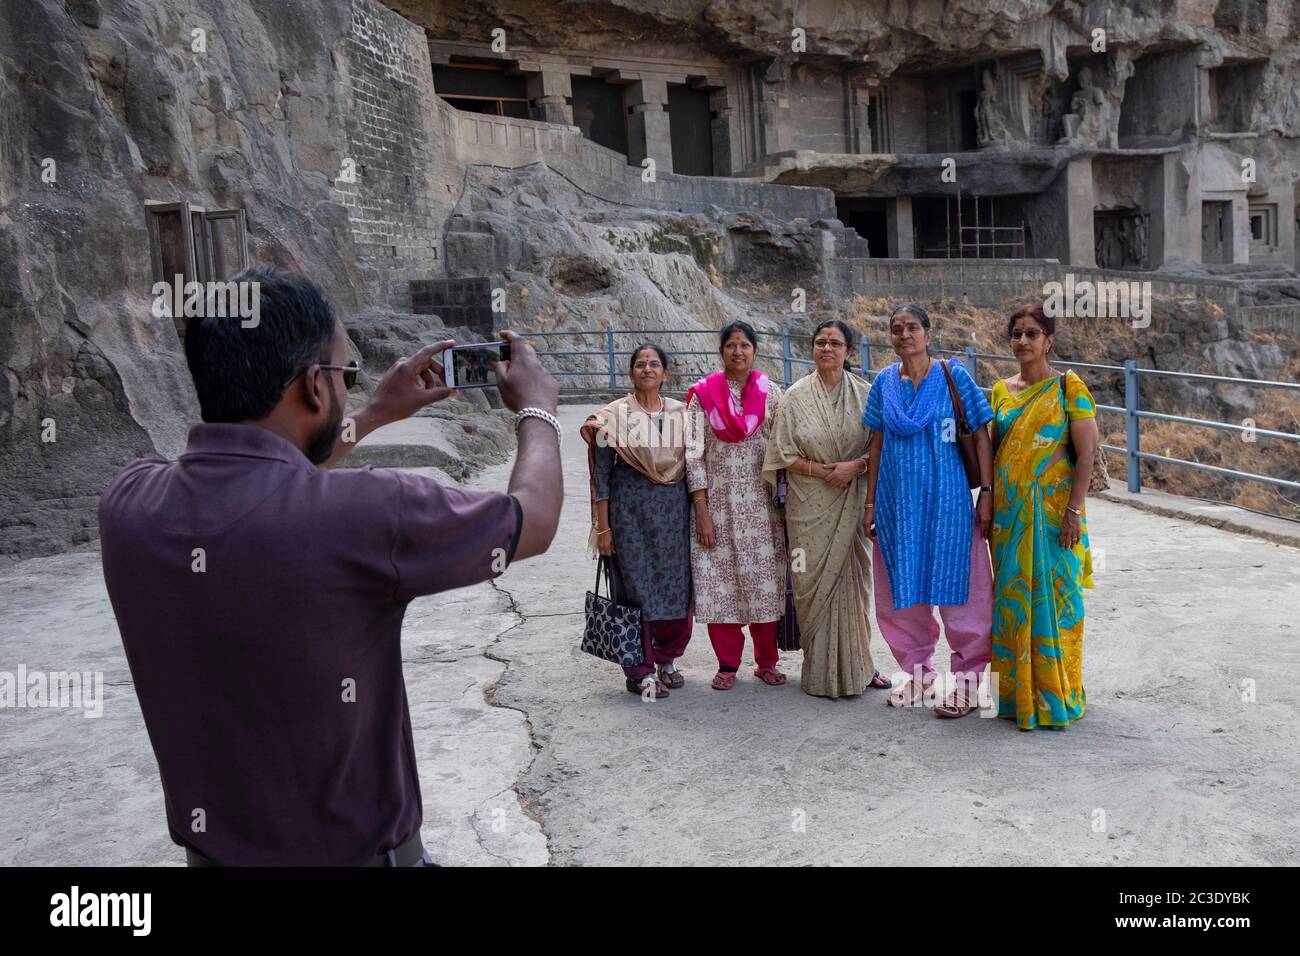 Homme prenant la photo de petites goupes de femmes devant les grottes d'Ellora, Aurangabad, Maharashtra, Inde. Banque D'Images